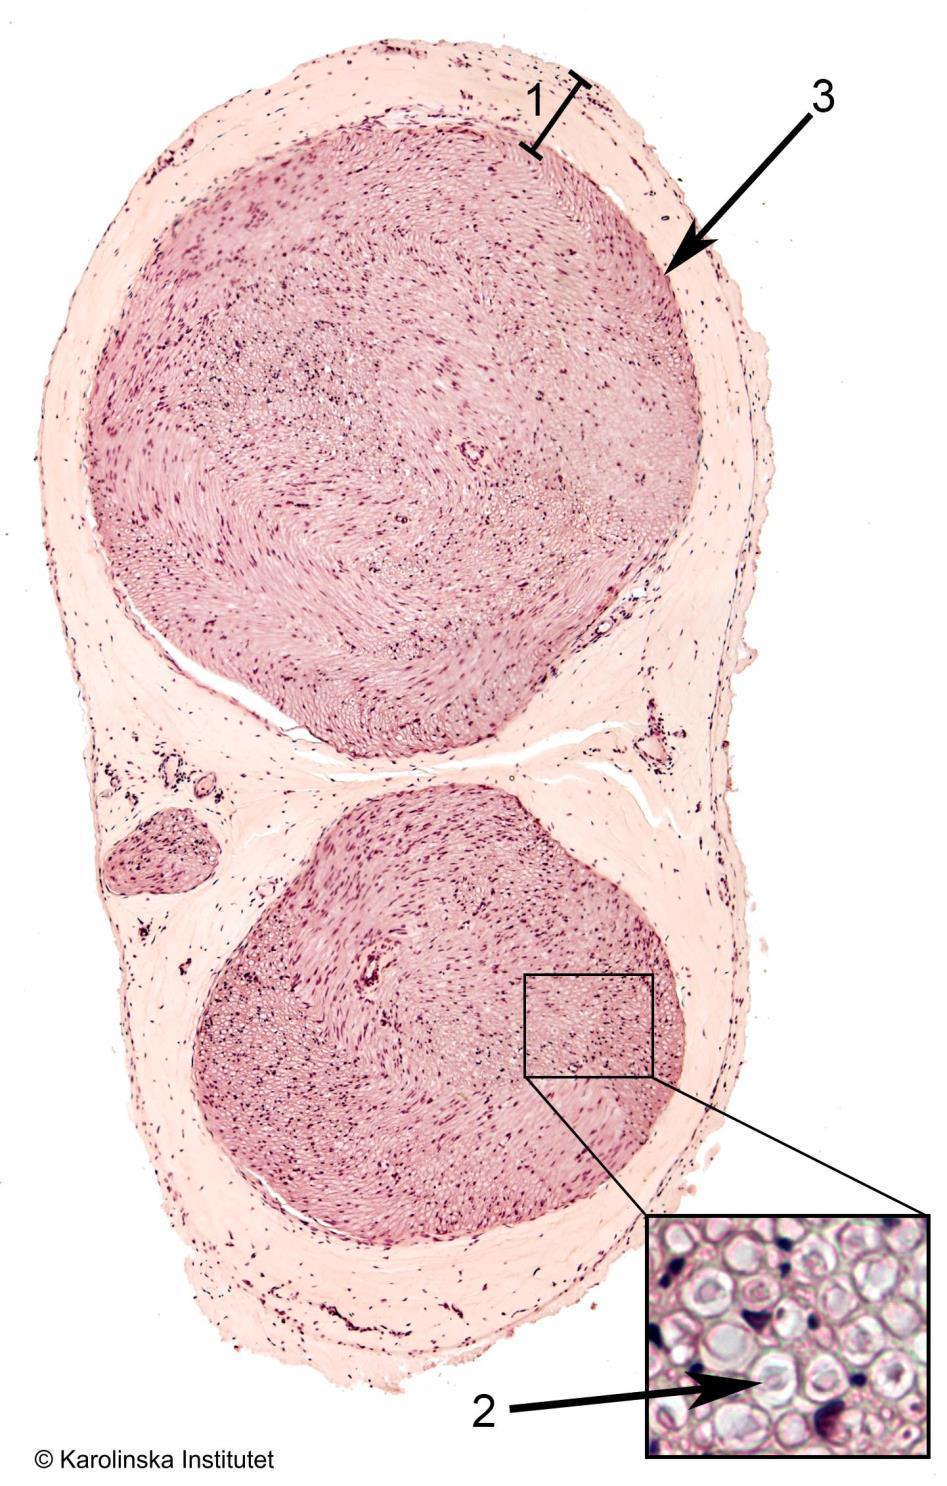 31:2. Perifer nerv, tvärsnitt Htx-eosin 1. Epineurium 3. Perineurium 2. Axon Preparatet består av ett tvärsnitt av en perifer nerv, inbäddad i en lucker bindväv innehållande mycket fettceller.